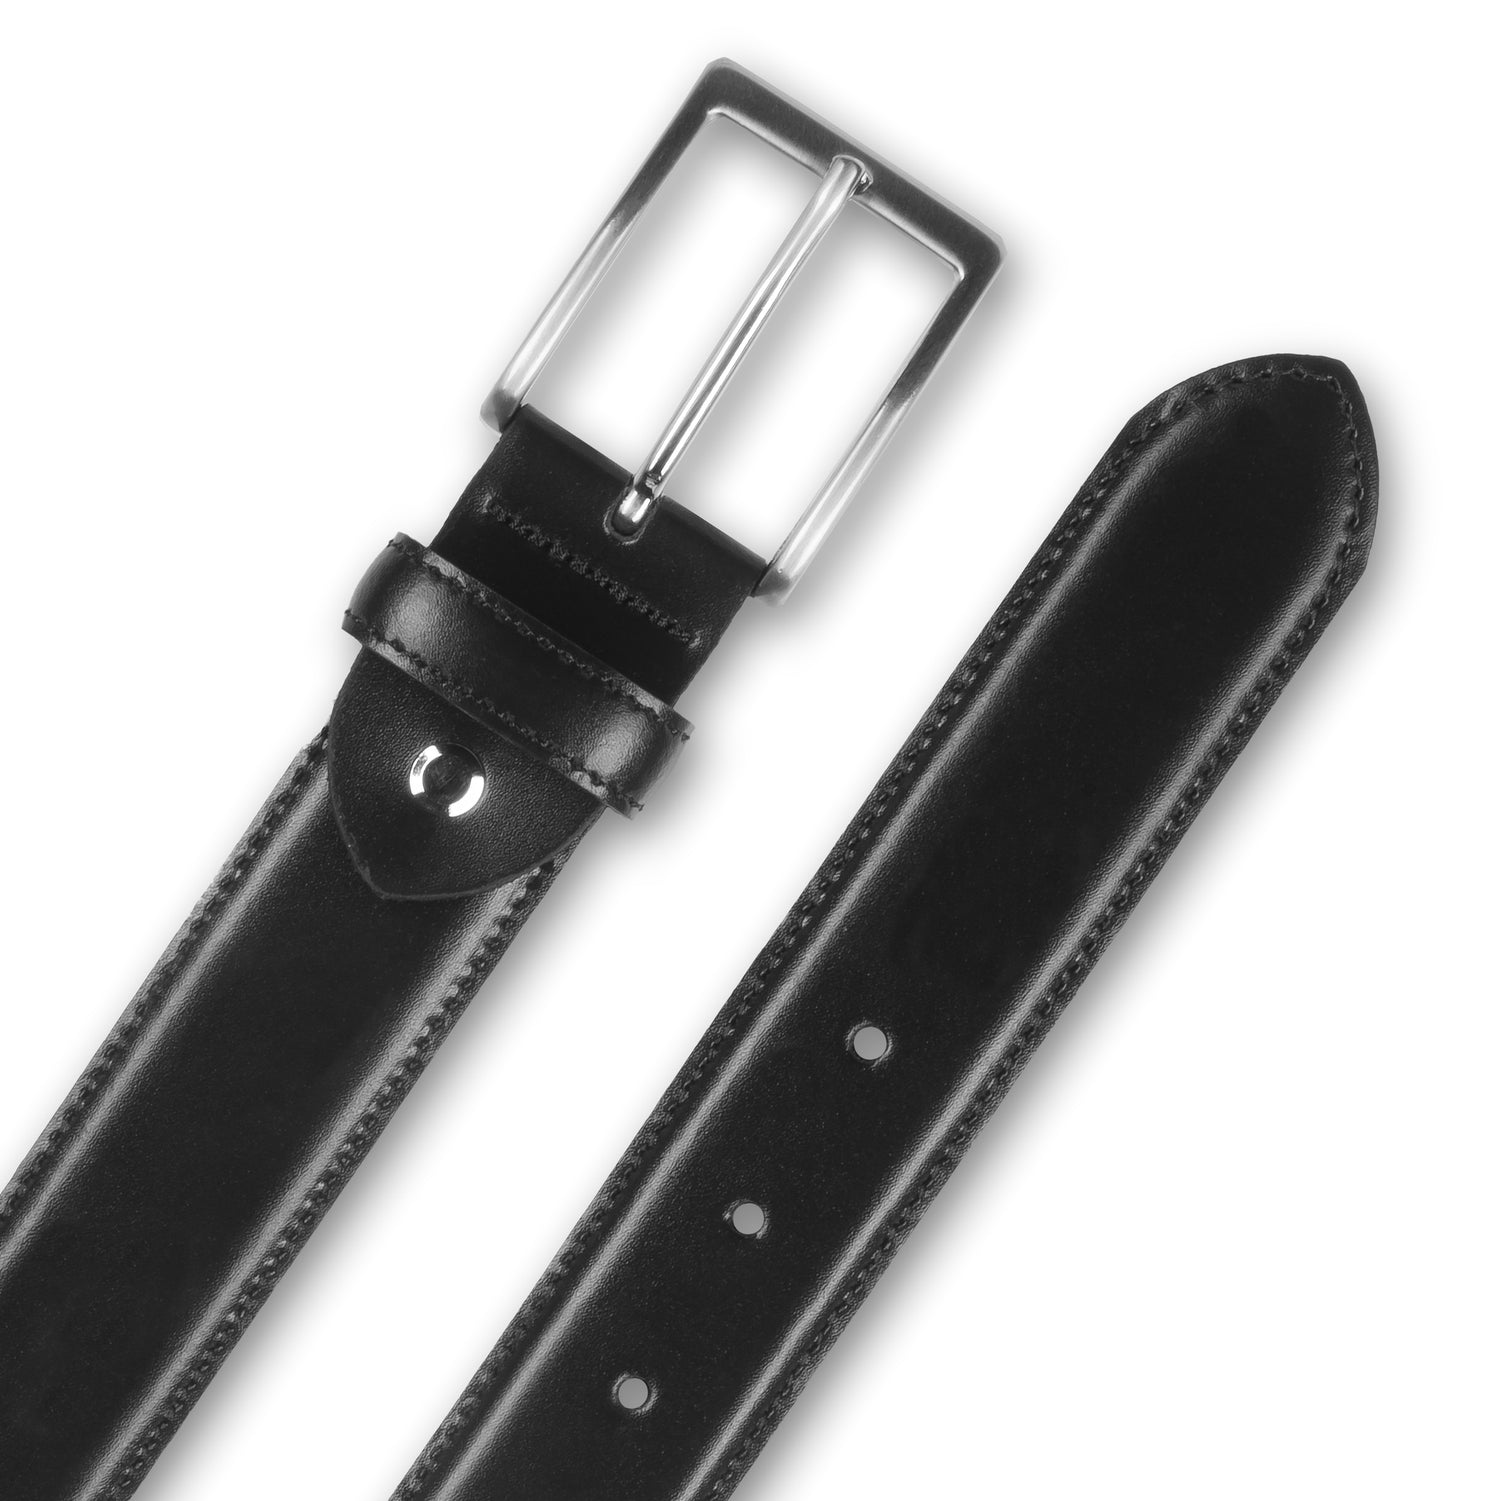 Ledergürtel / Anzuggürtel schwarz 3 cm breit